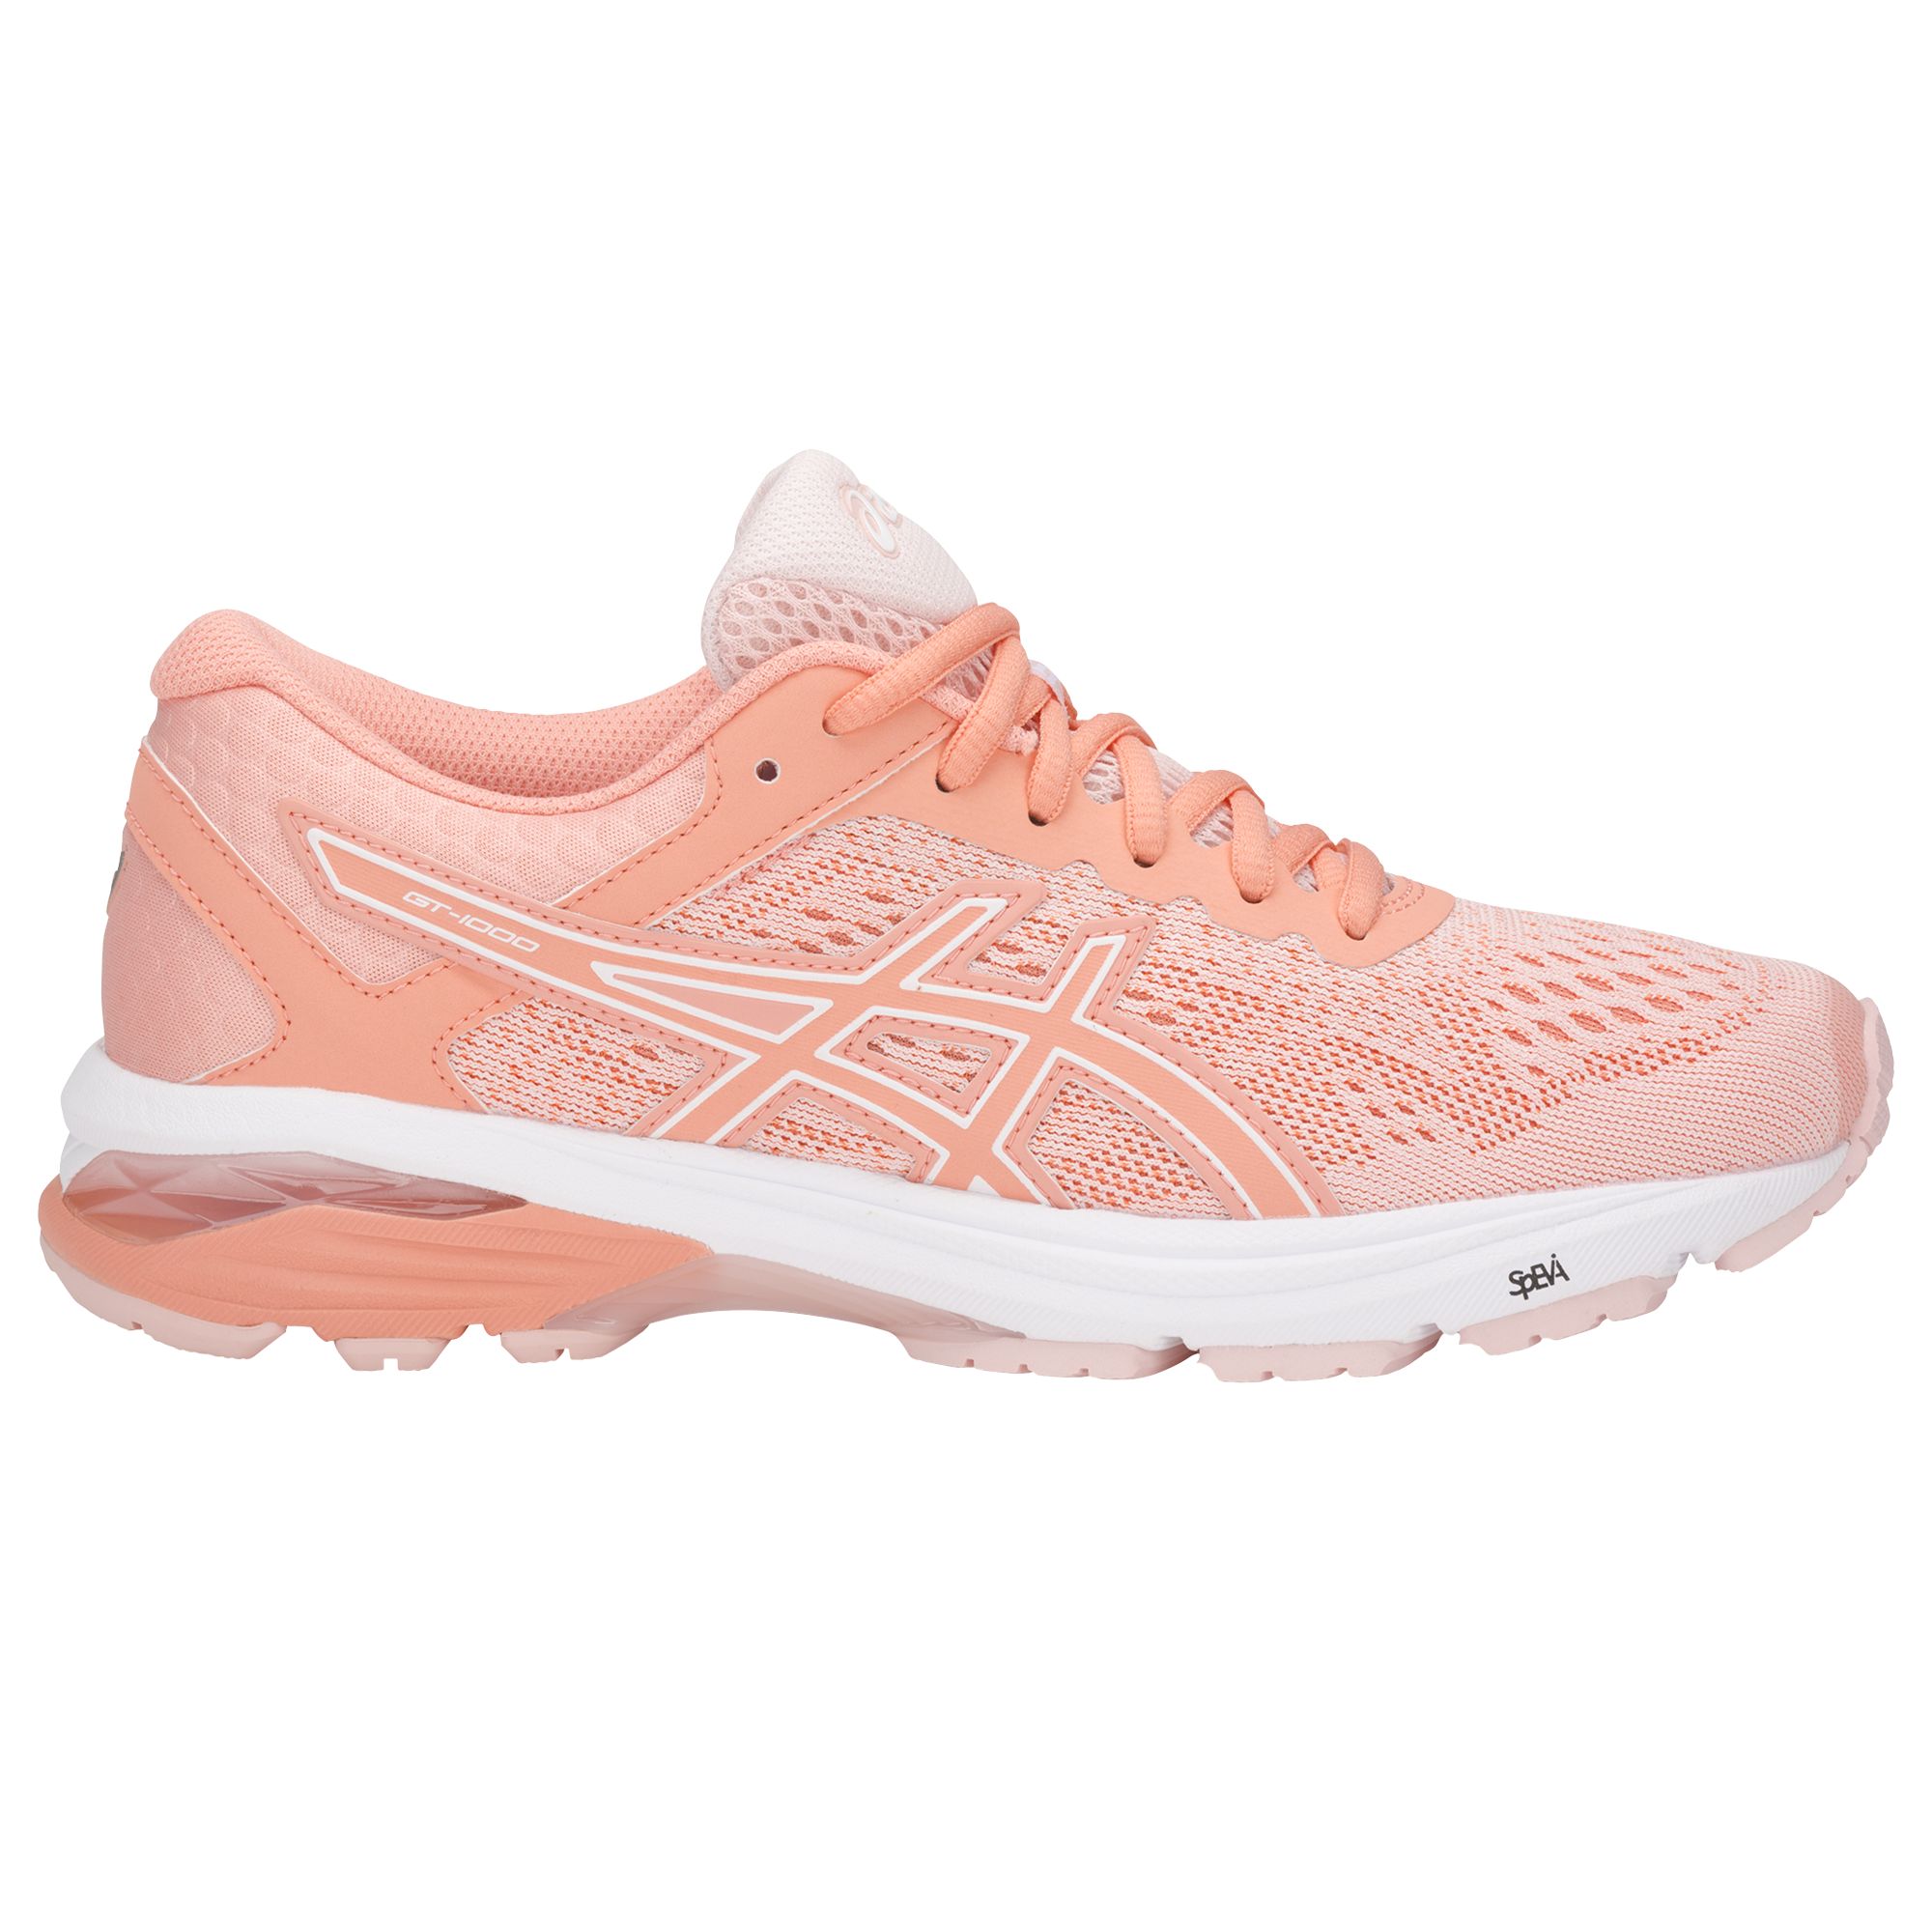 Asics GT-1000 6 Women's Running Shoes, Seashell Pink/White/Begonia Pink, 5.5